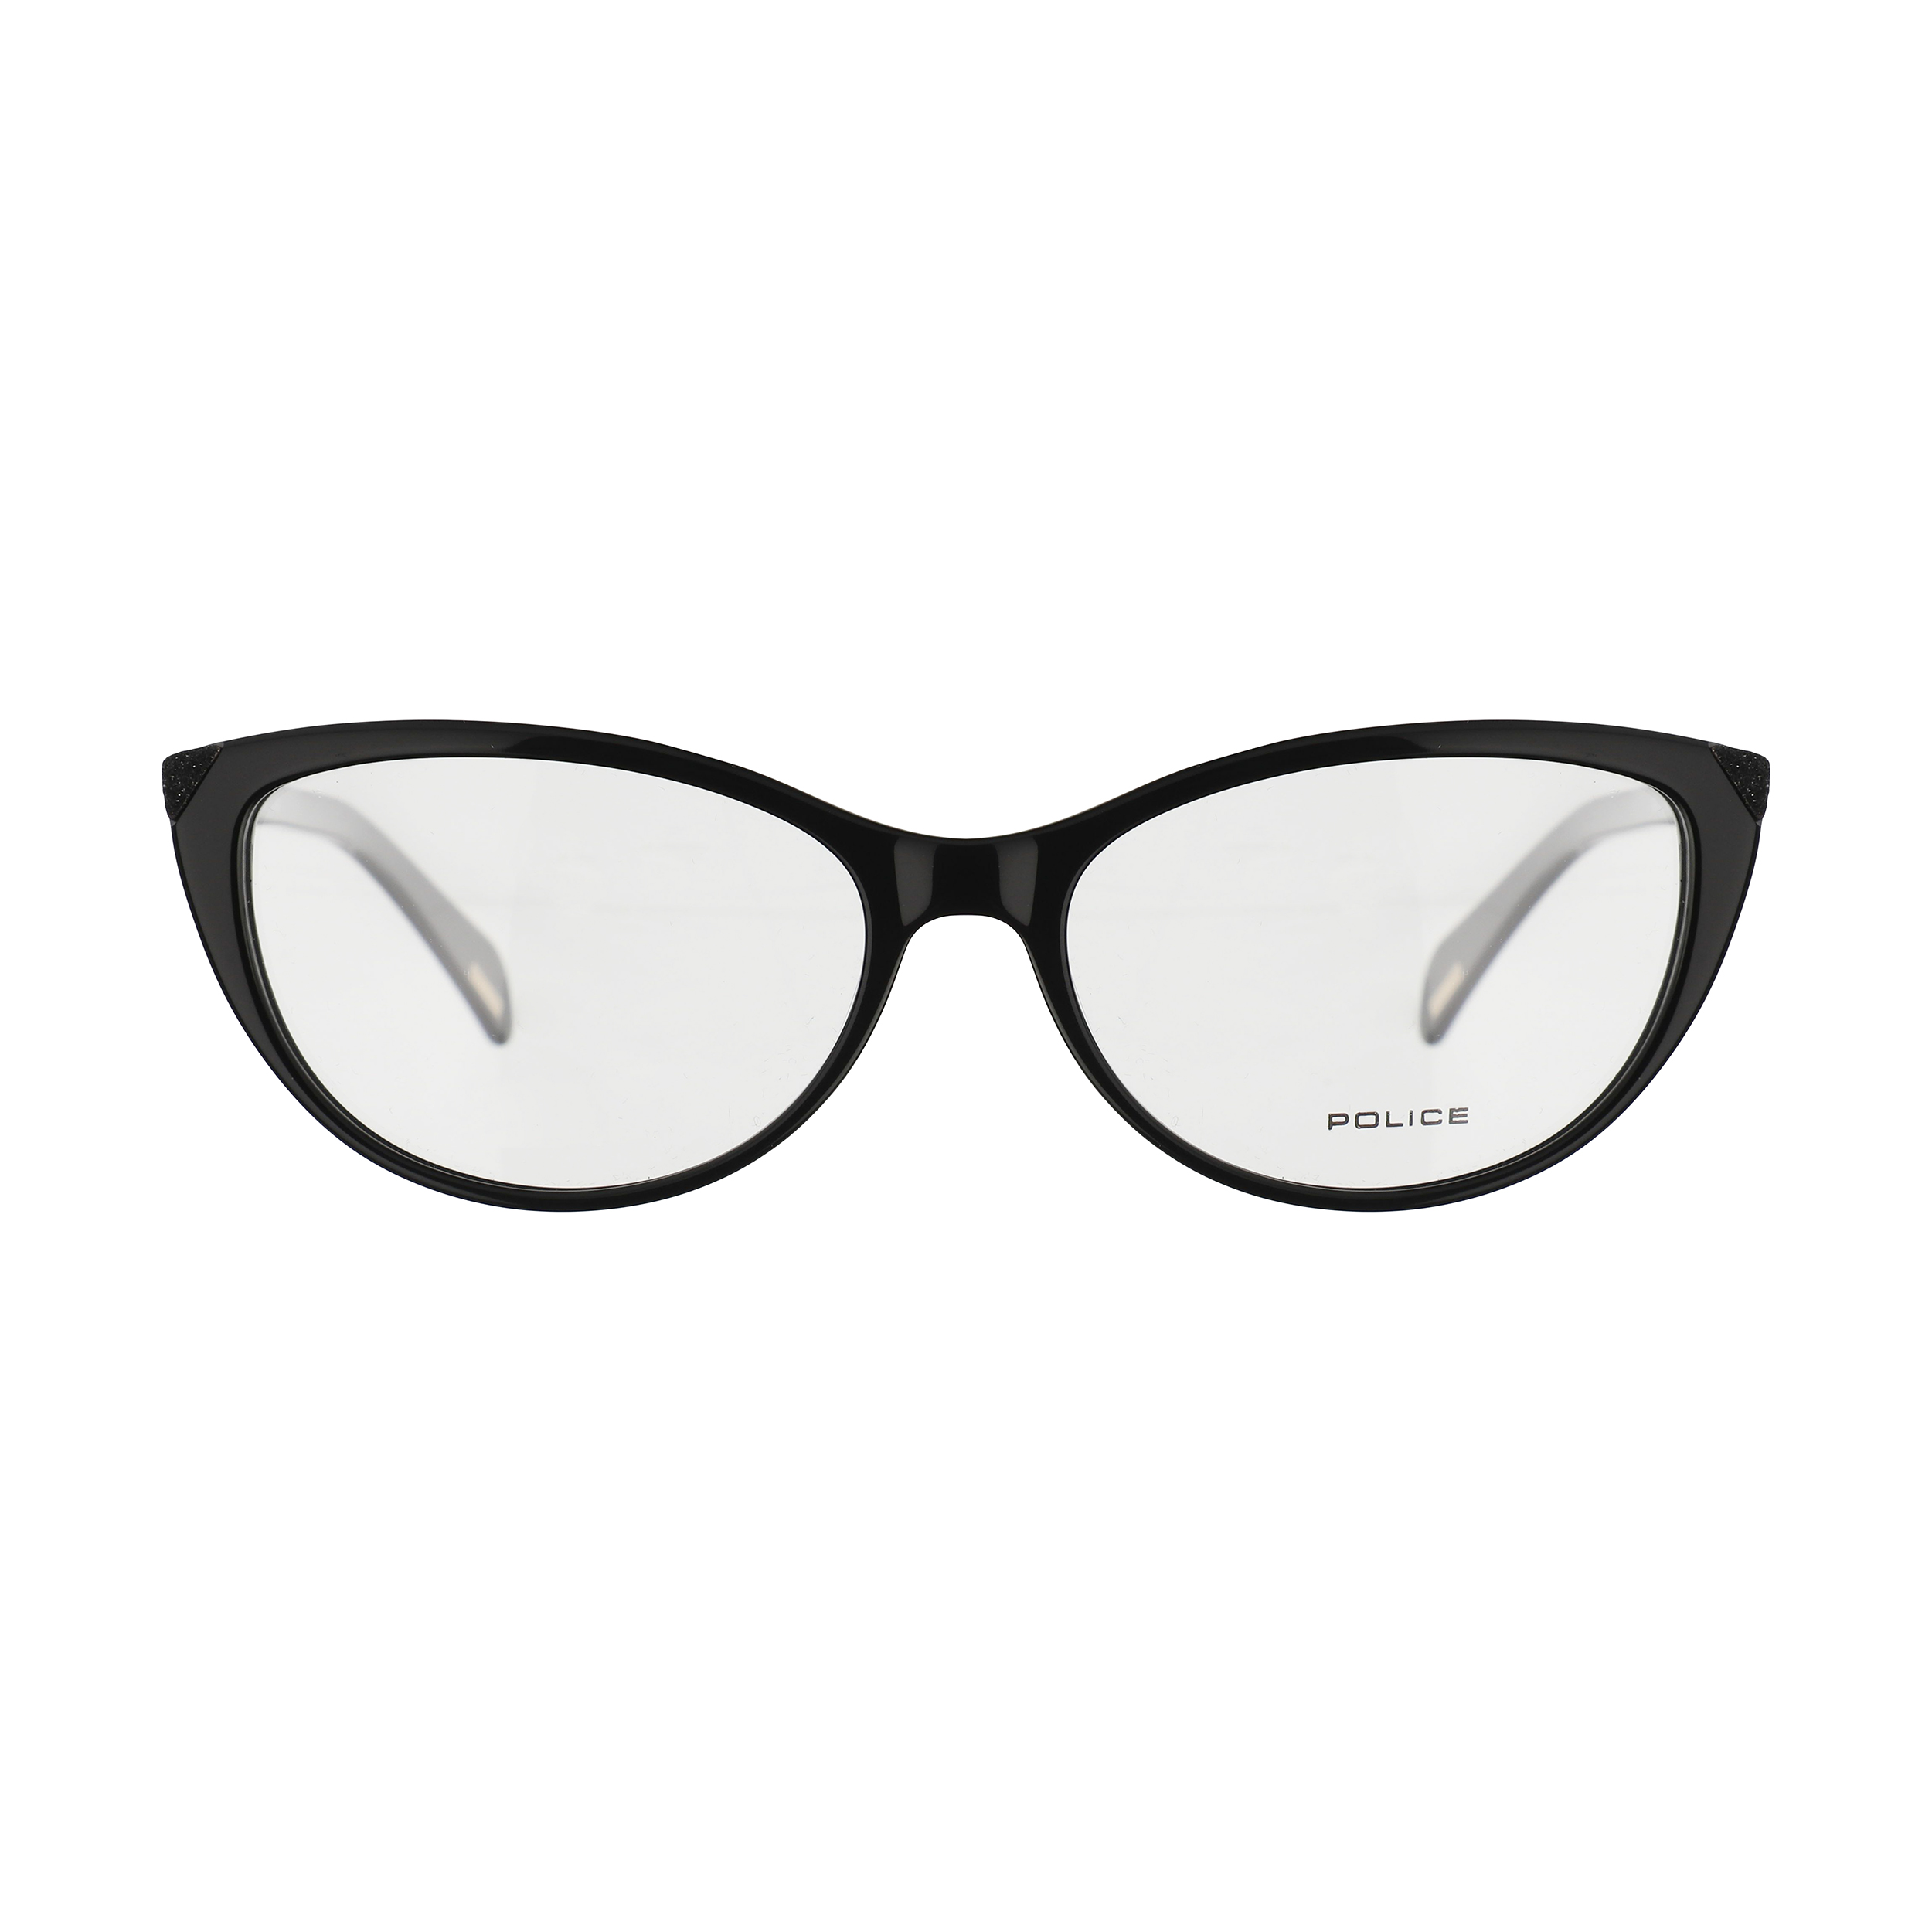 فریم عینک طبی زنانه پلیس مدل VPL928M-0700